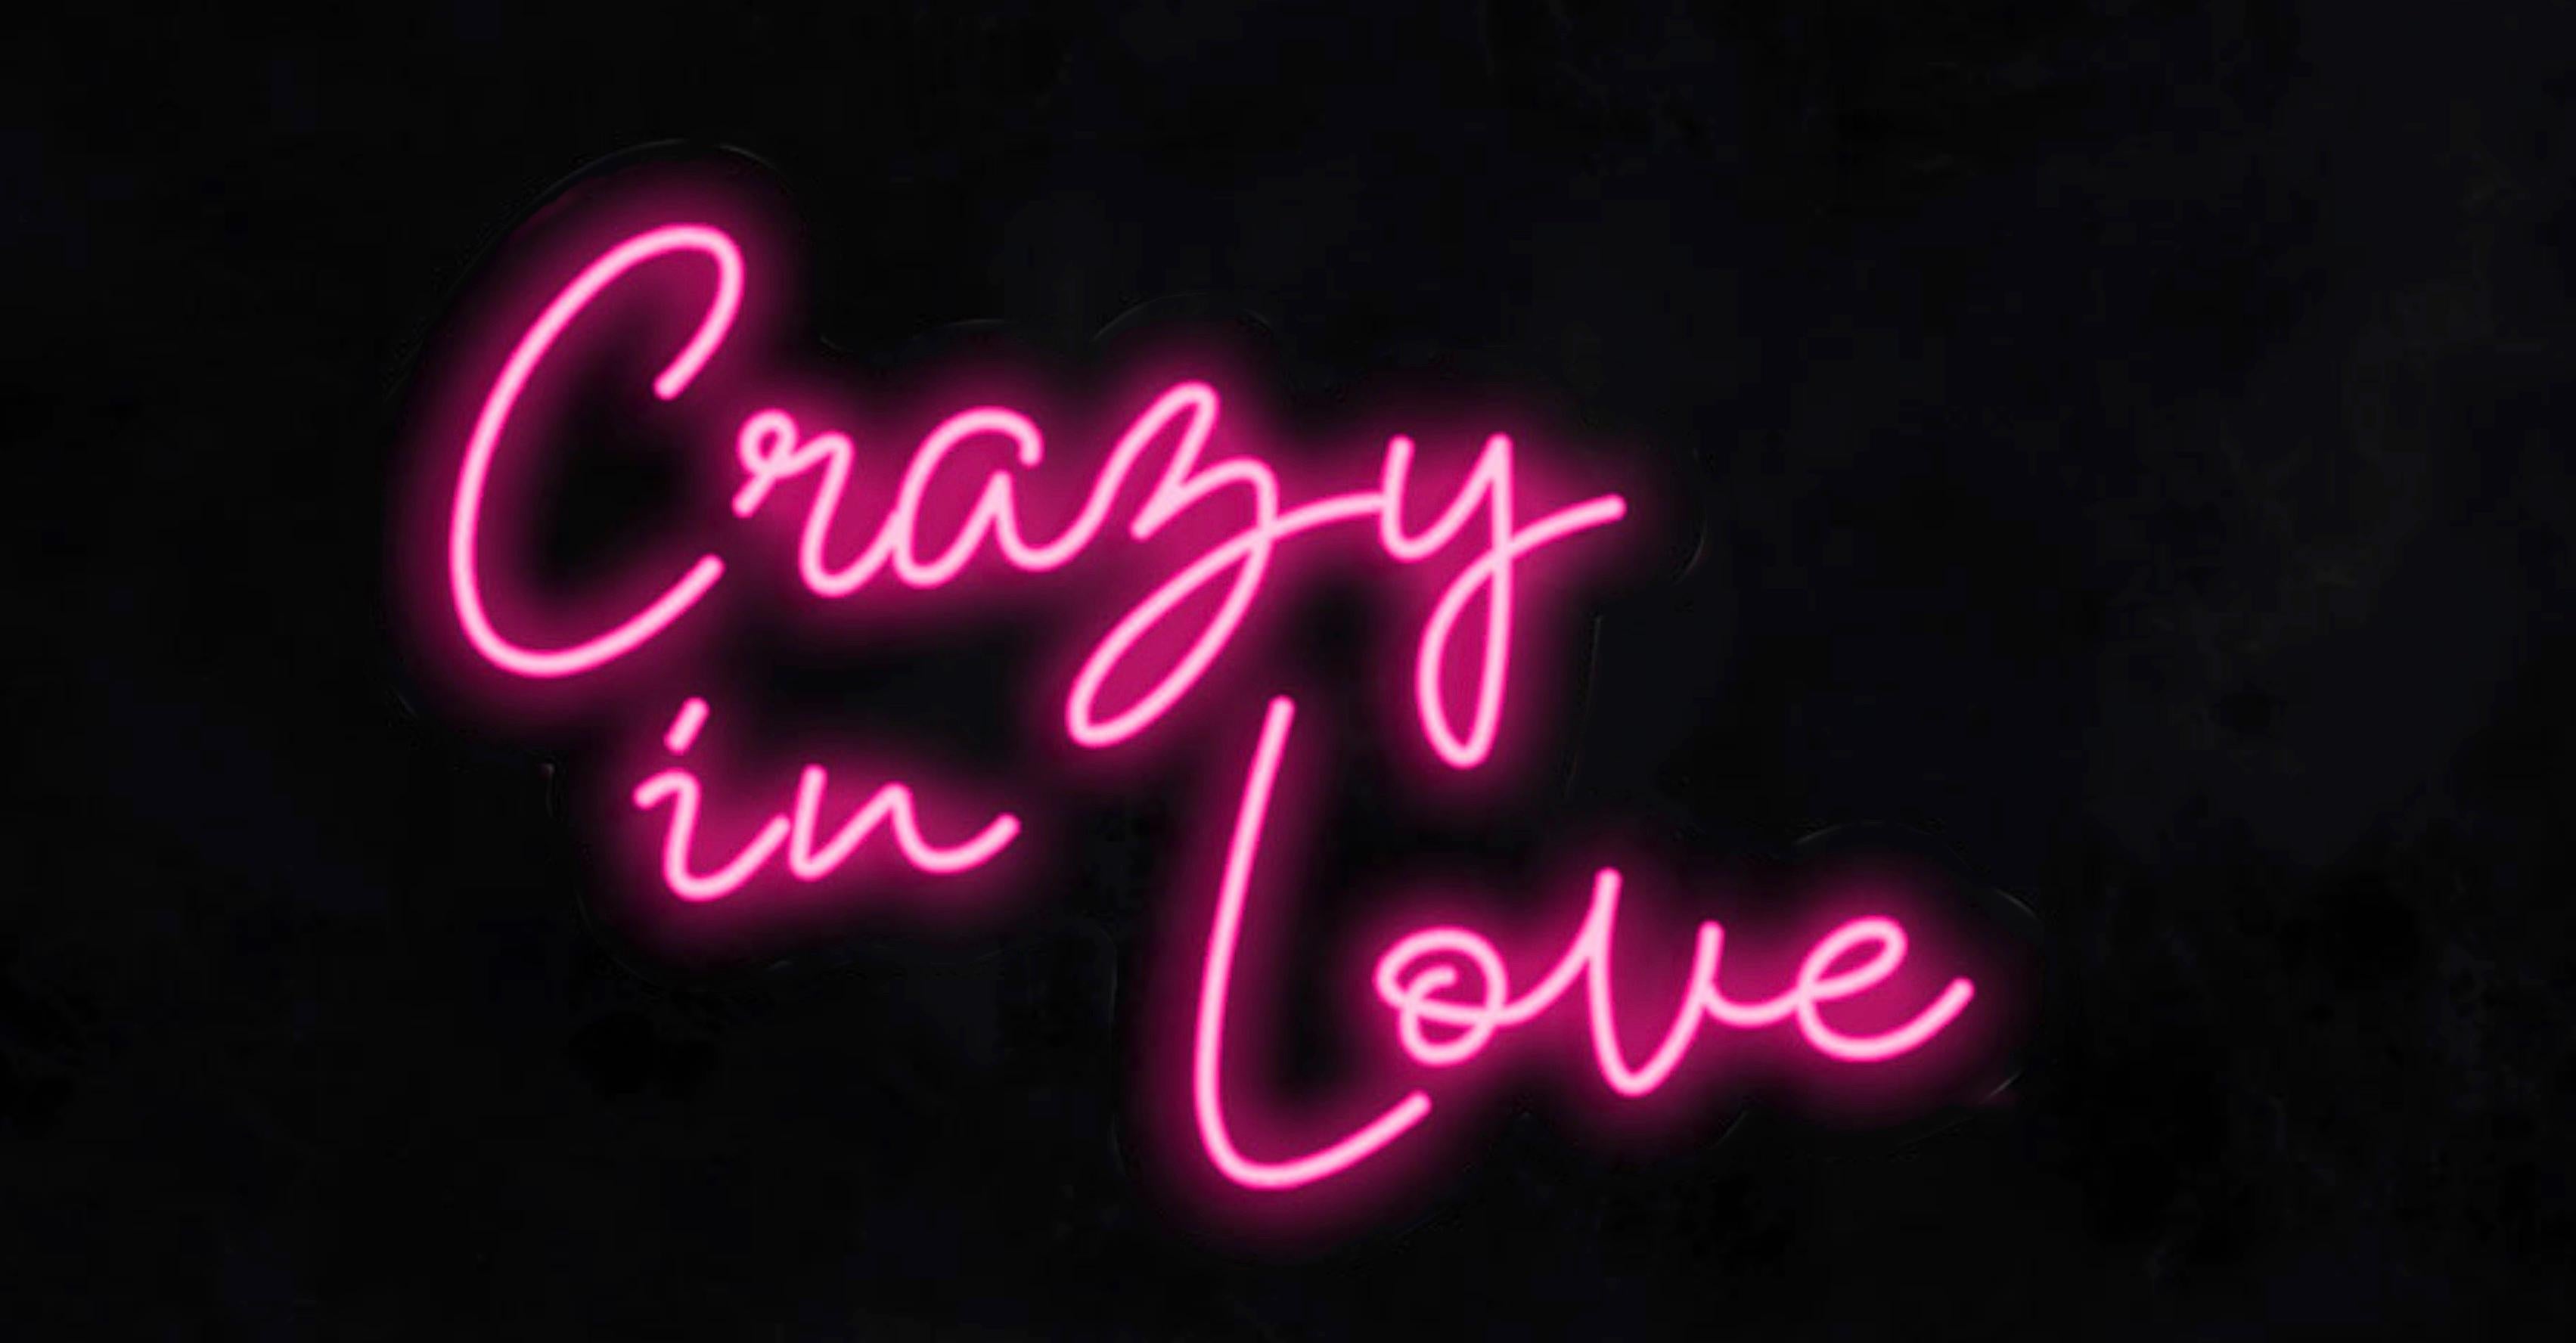 Mary Jo McGonagle Figurative Sculpture - crazy in love - neon art work